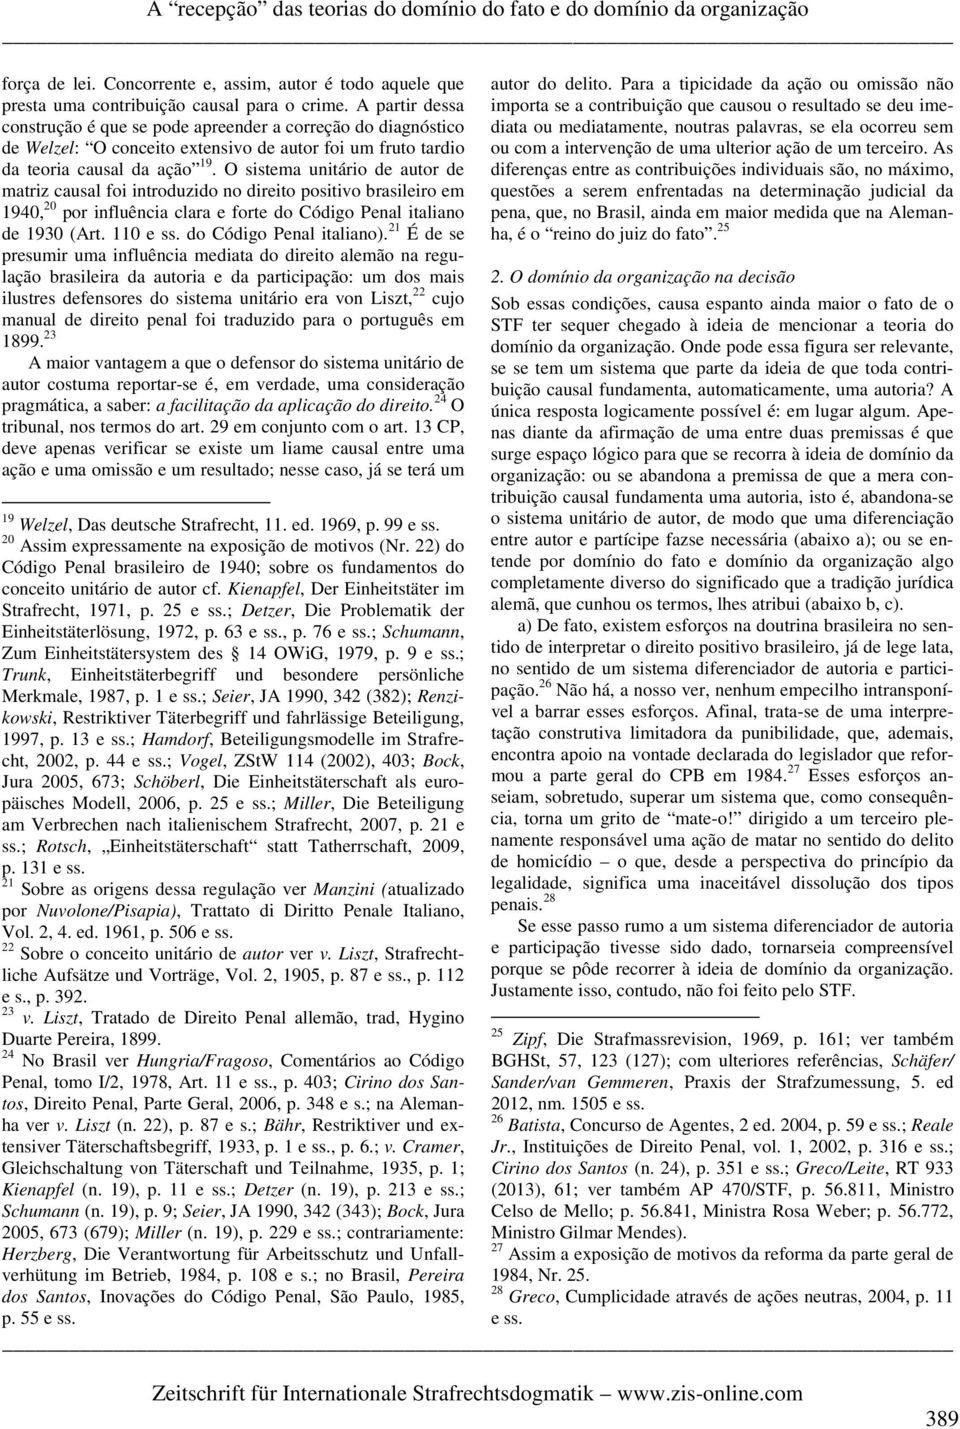 O sistema unitário de autor de matriz causal foi introduzido no direito positivo brasileiro em 1940, 20 por influência clara e forte do Código Penal italiano de 1930 (Art. 110 e ss.